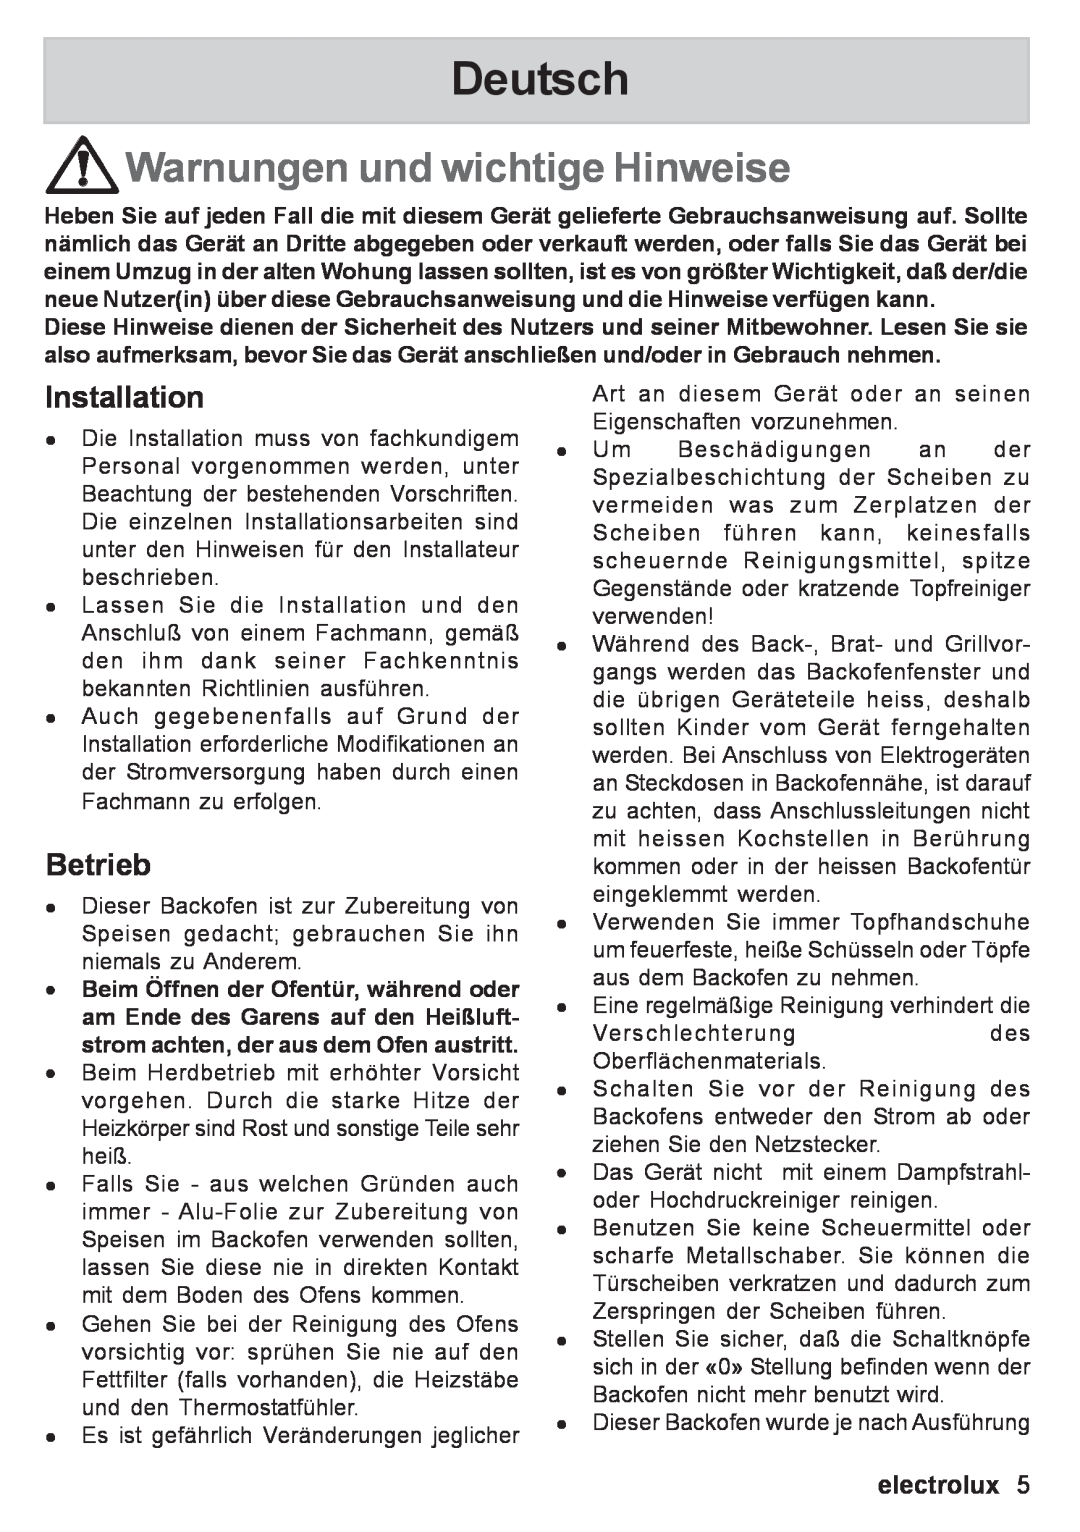 Electrolux EOB 53003 user manual Deutsch, Warnungen und wichtige Hinweise, Installation, Betrieb, electrolux 